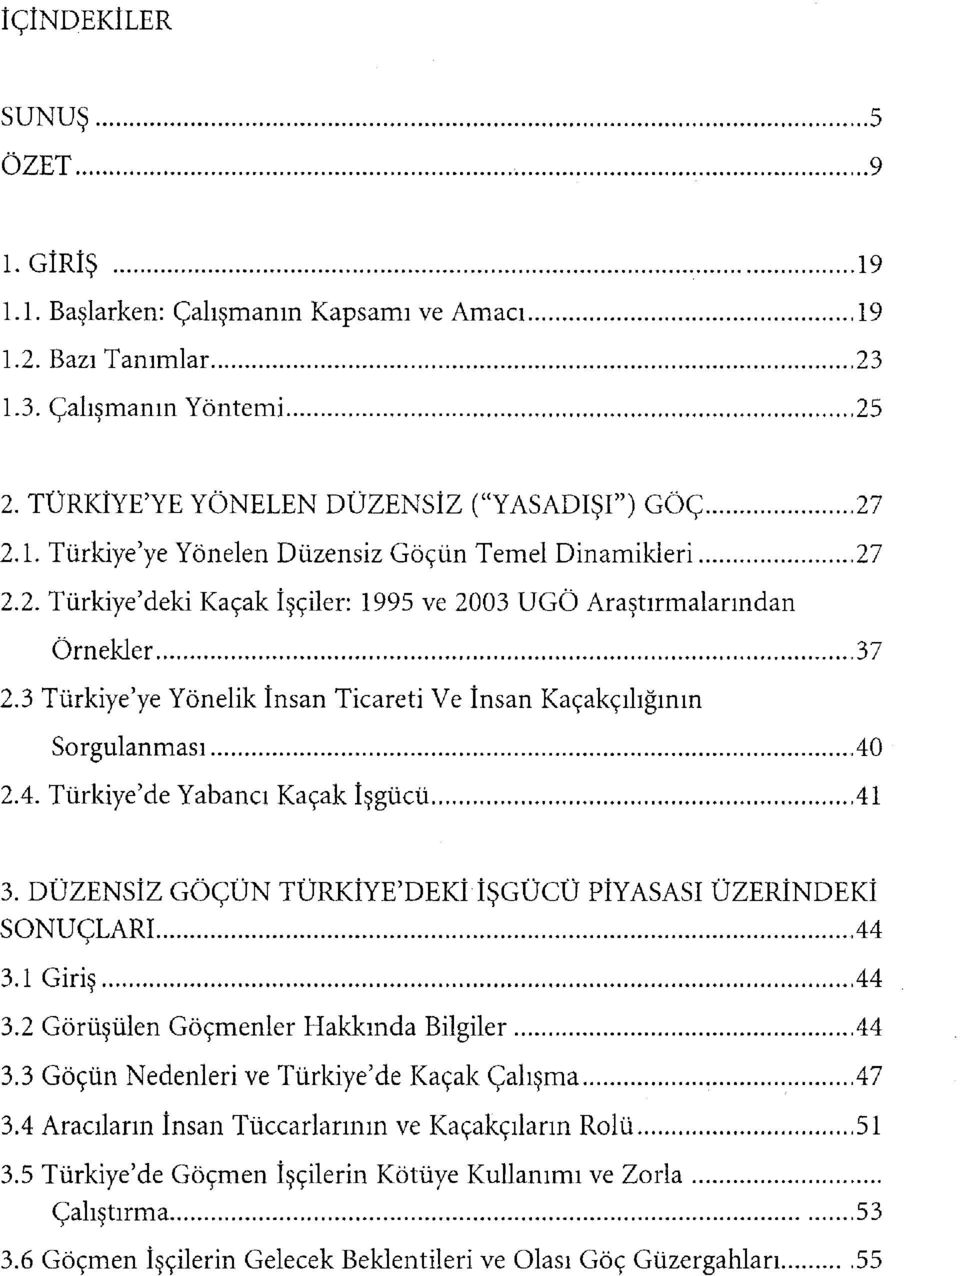 DÜZENSİZ GÖÇÜN TÜRKİYE'DEKİ İŞGÜCÜ PİYASASI ÜZERİNDEKİ SONUÇLARI 44 3.1 Giriş.44 3.2 Görüşülen Göçmenler Hakkında Bilgiler 44 3.3 Göçün Nedenleri ve Türkiye'de Kaçak Çalışma 47 3.